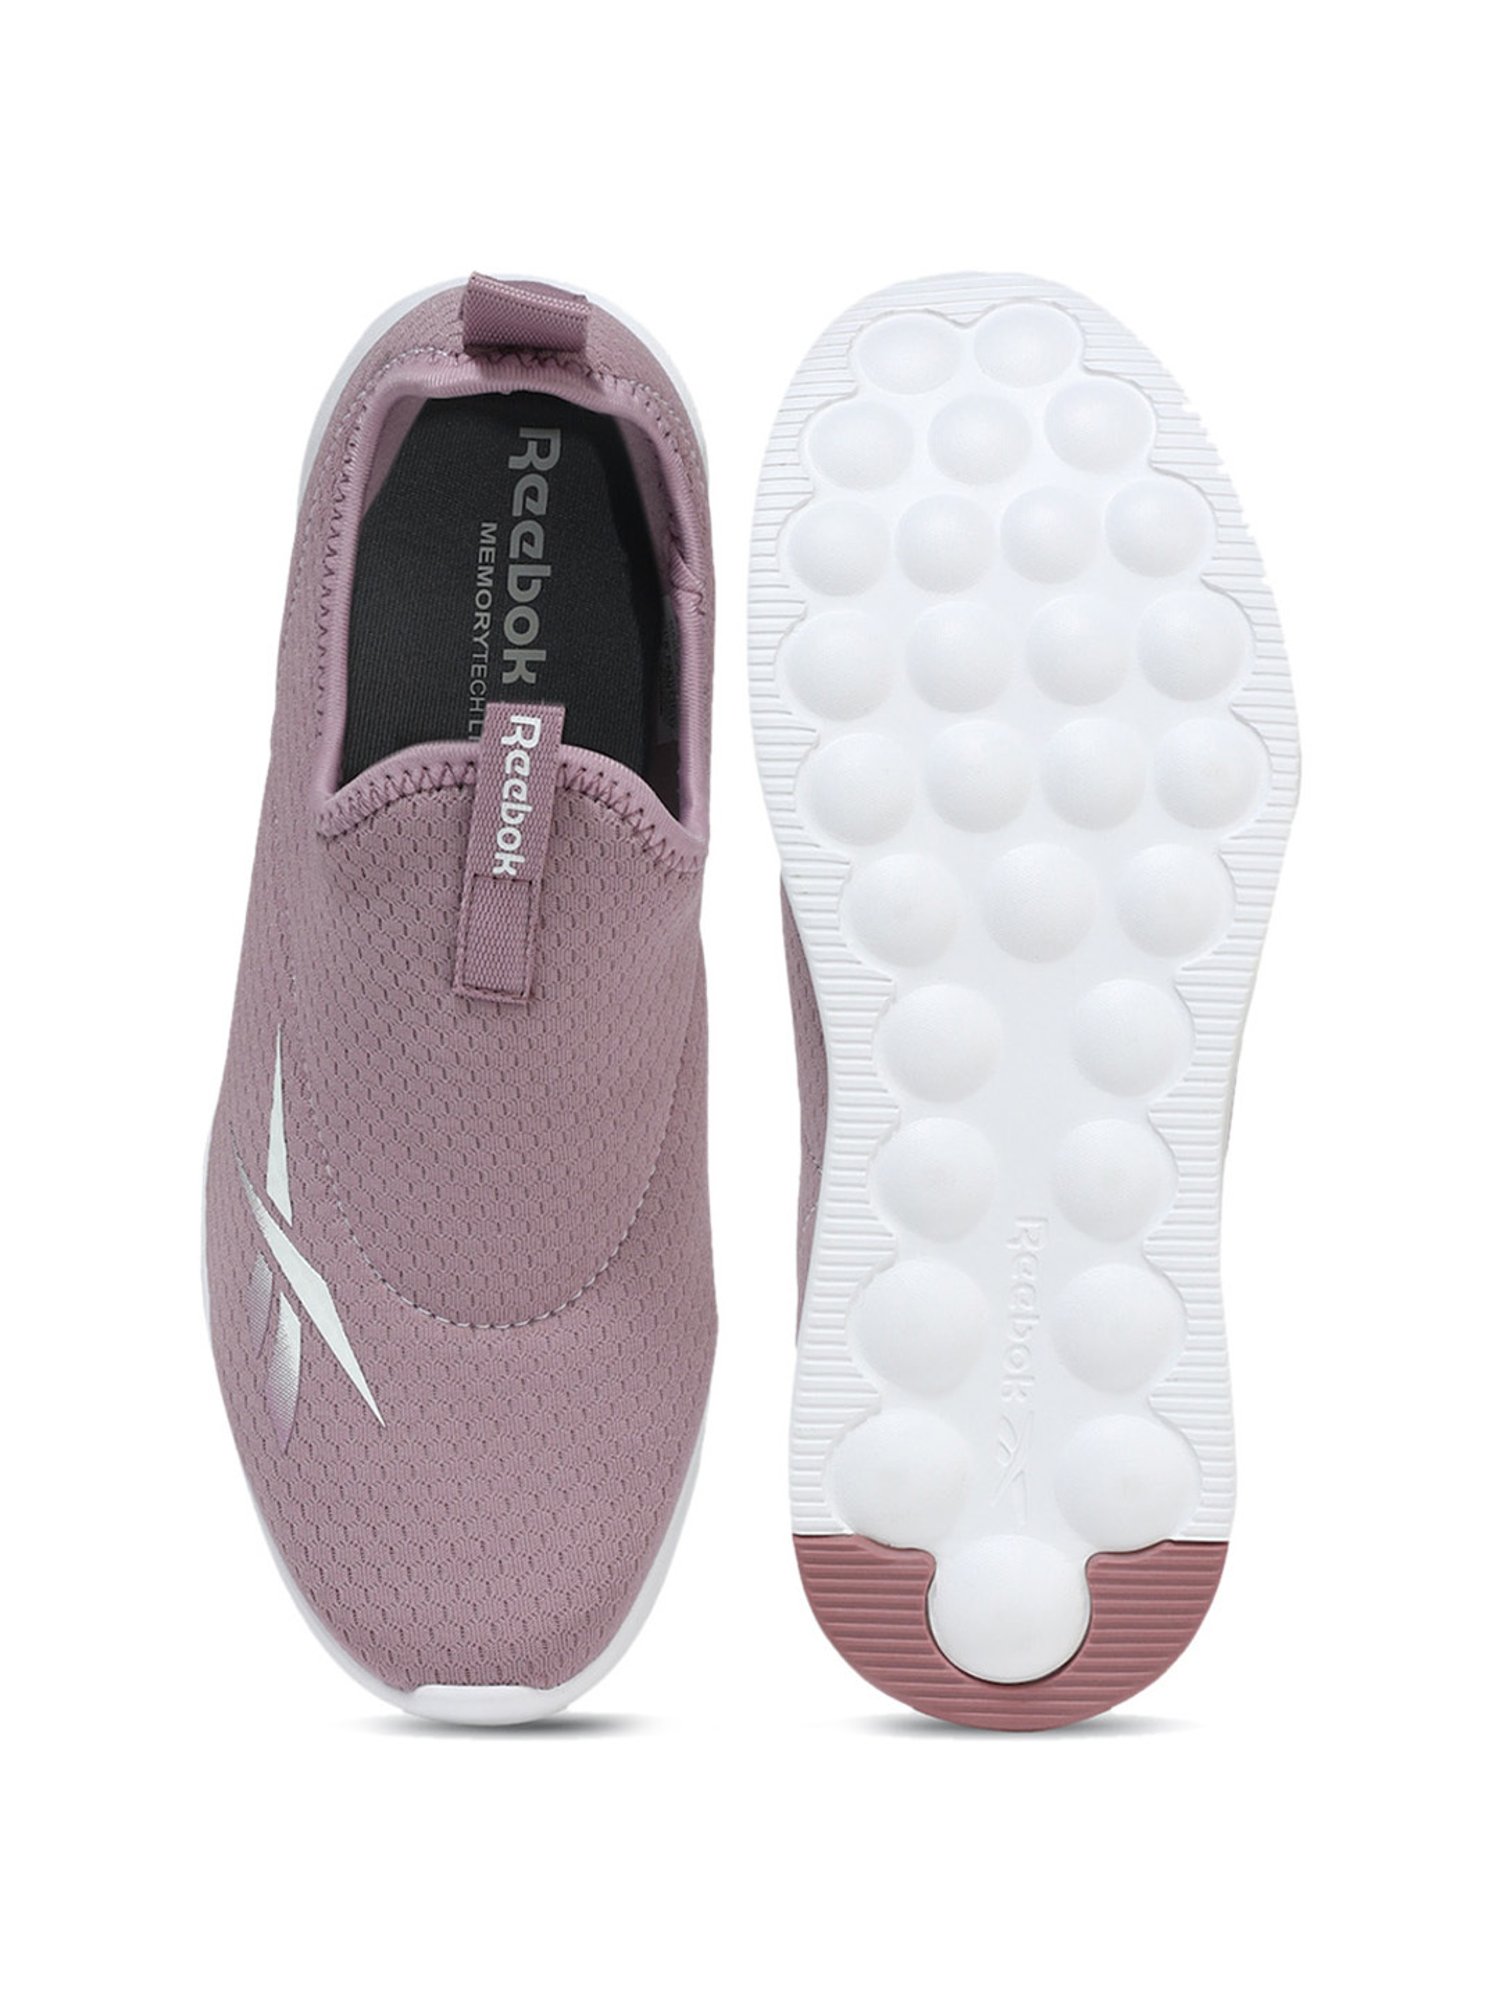 REEBOK Hydra Walk 2.0 W Walking Shoes For Women - Buy REEBOK Hydra